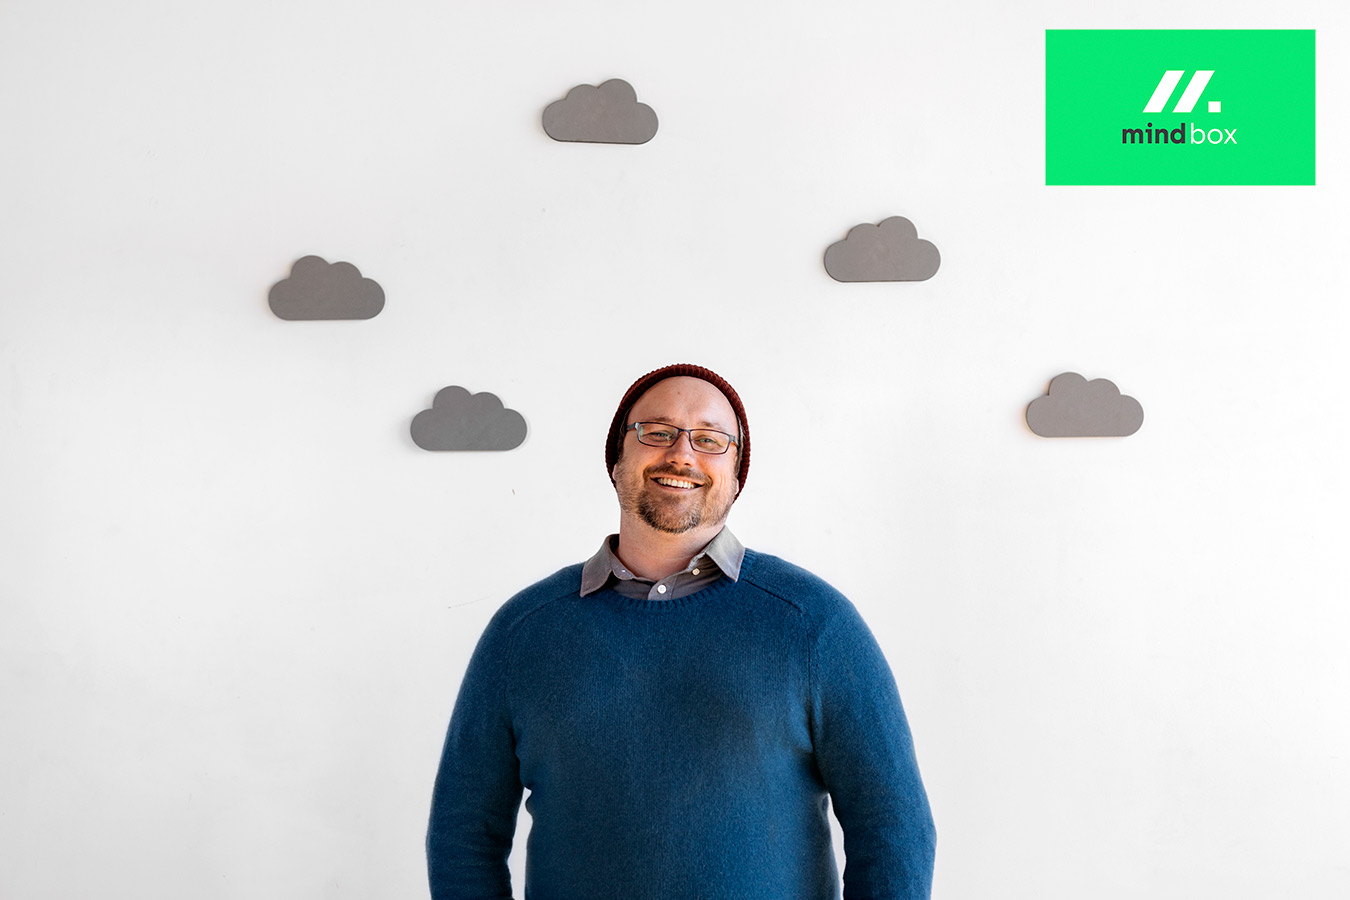 cloud native pomažemo kompanijama poput vaše da uspiju u doba oblaka